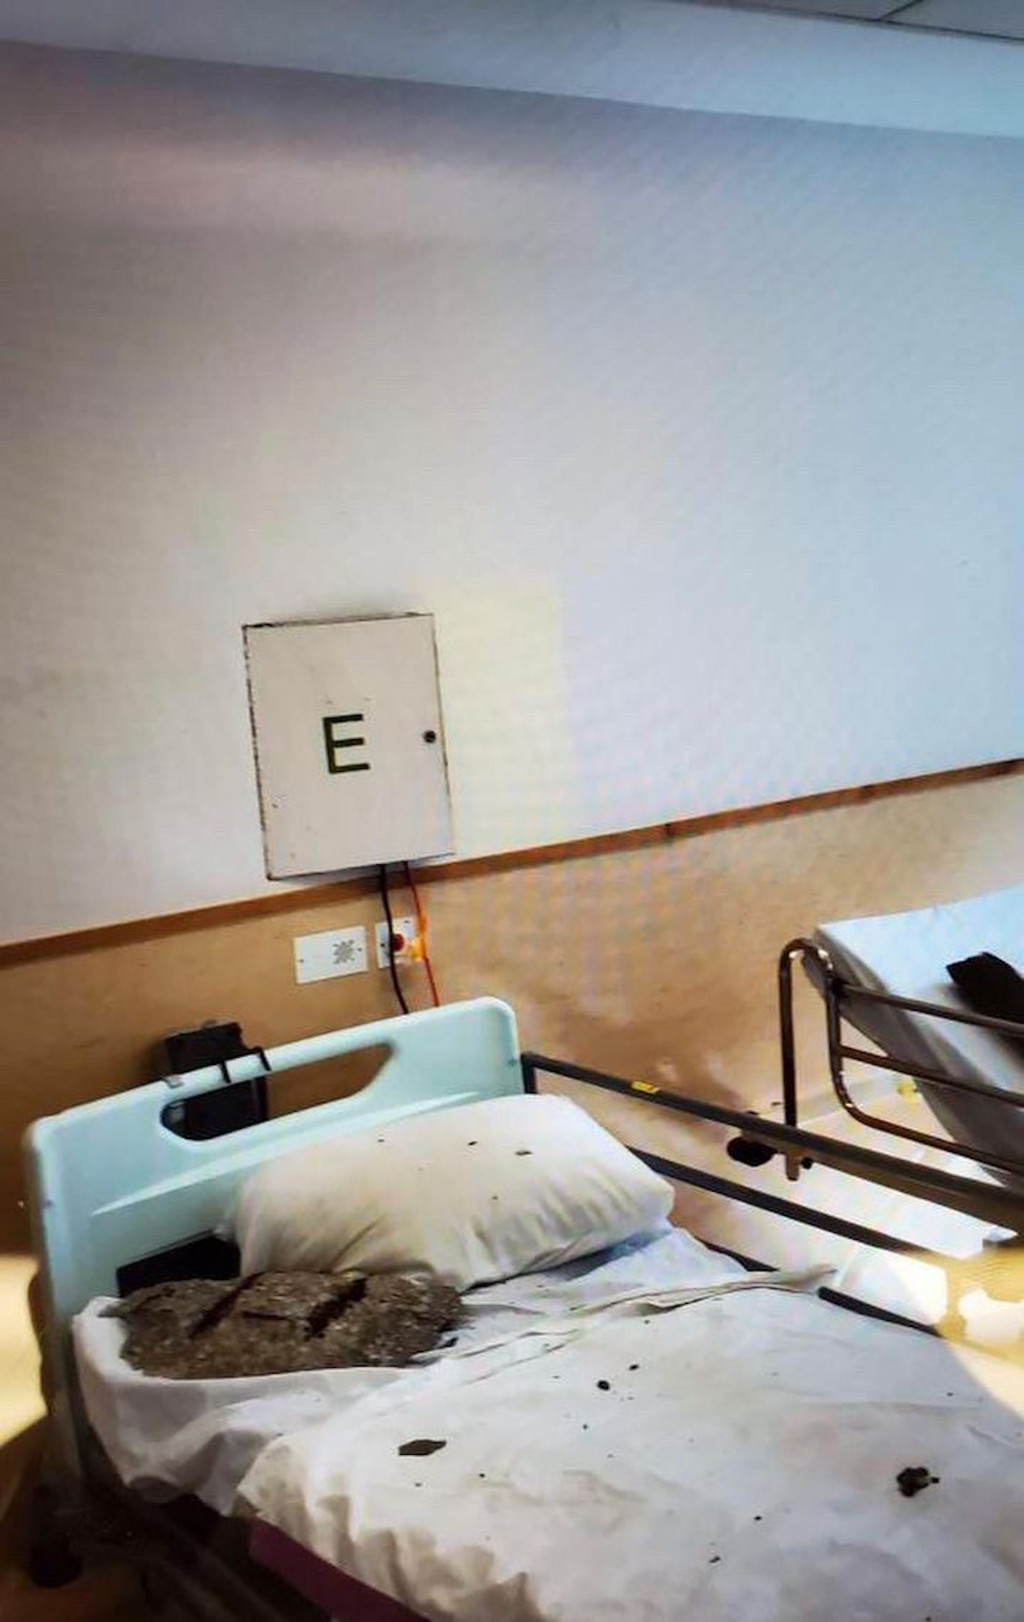 青山医院石屎压正病牀，幸好当时并无病人在牀上。Instagram专页hanosecretshk